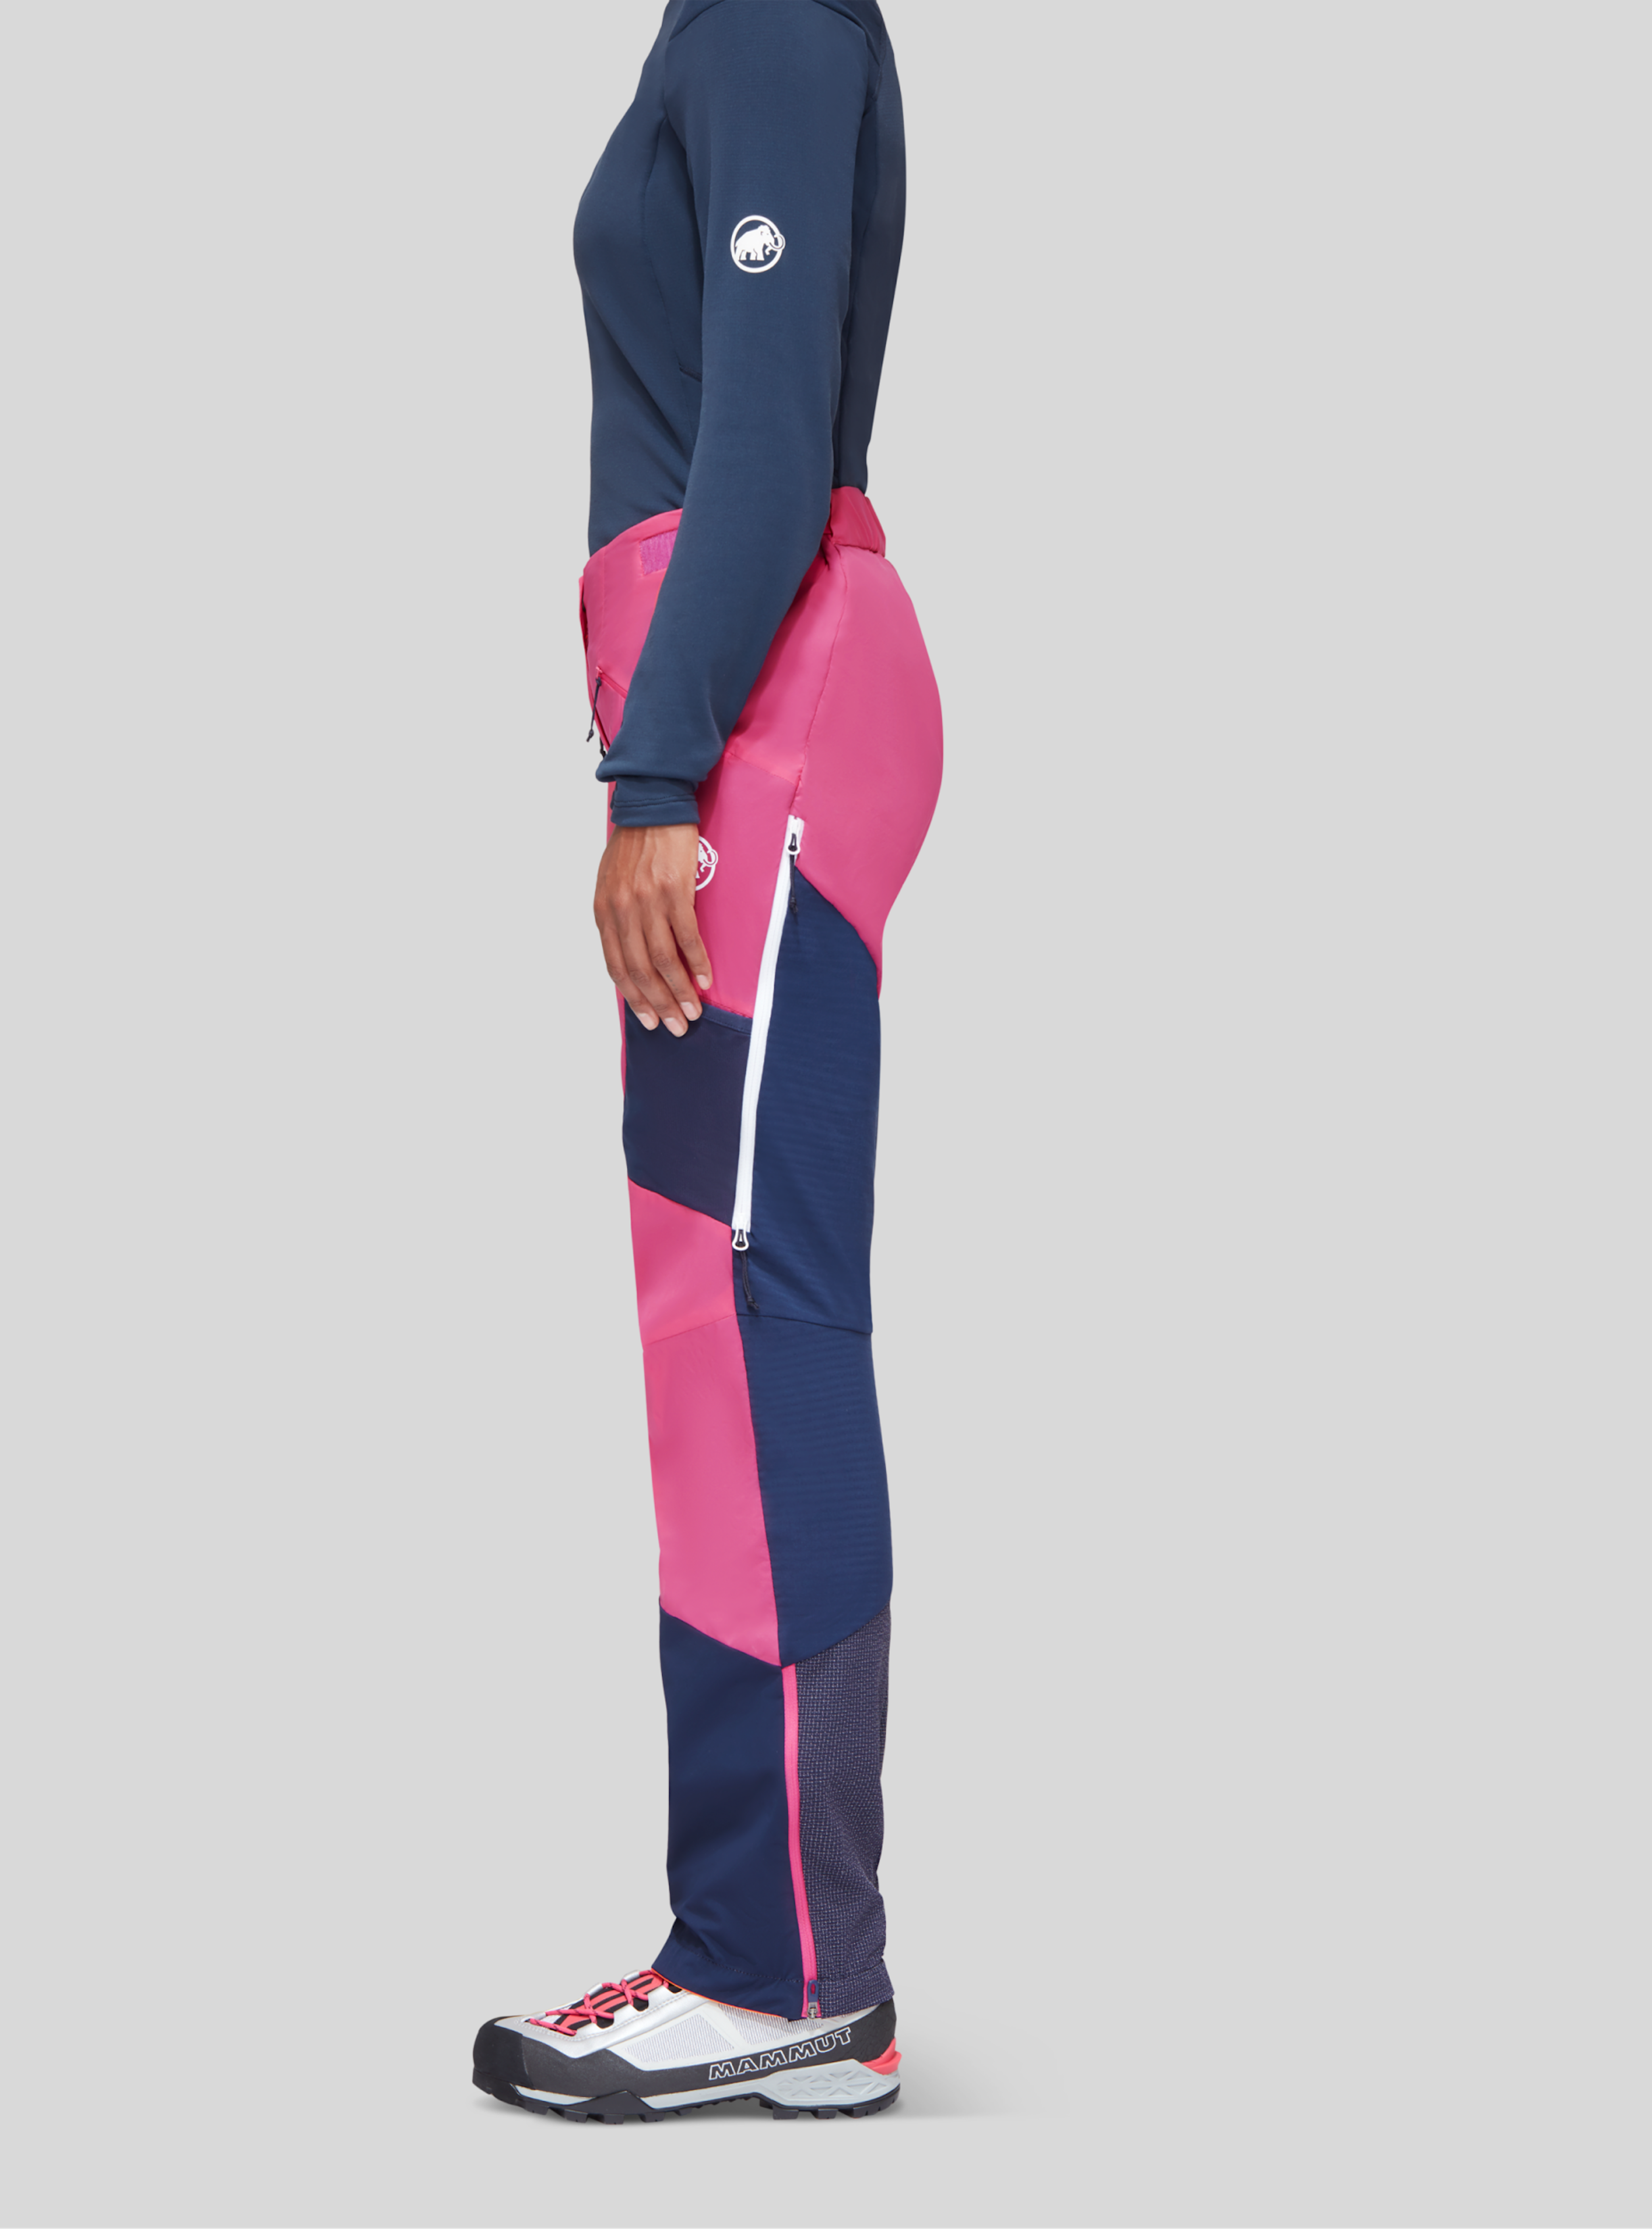 Mammut Hose für Frauen in blau/pink